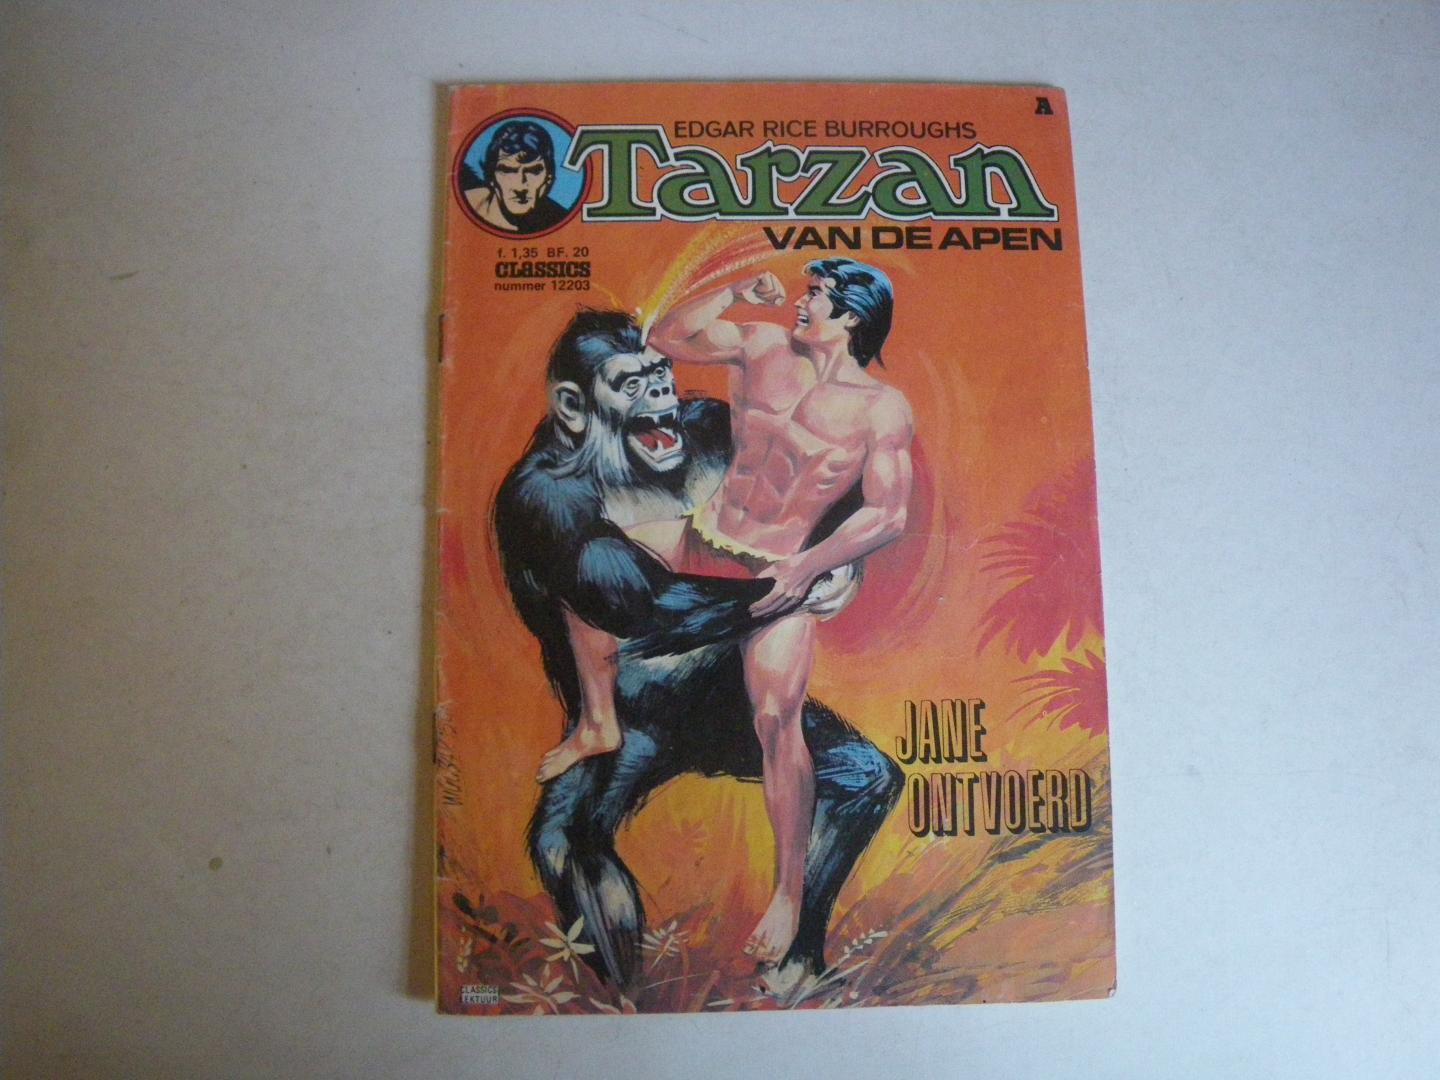 Rice Burroughs, Edgar - Tarzan van de apen - 12203 Jane ontvoerd